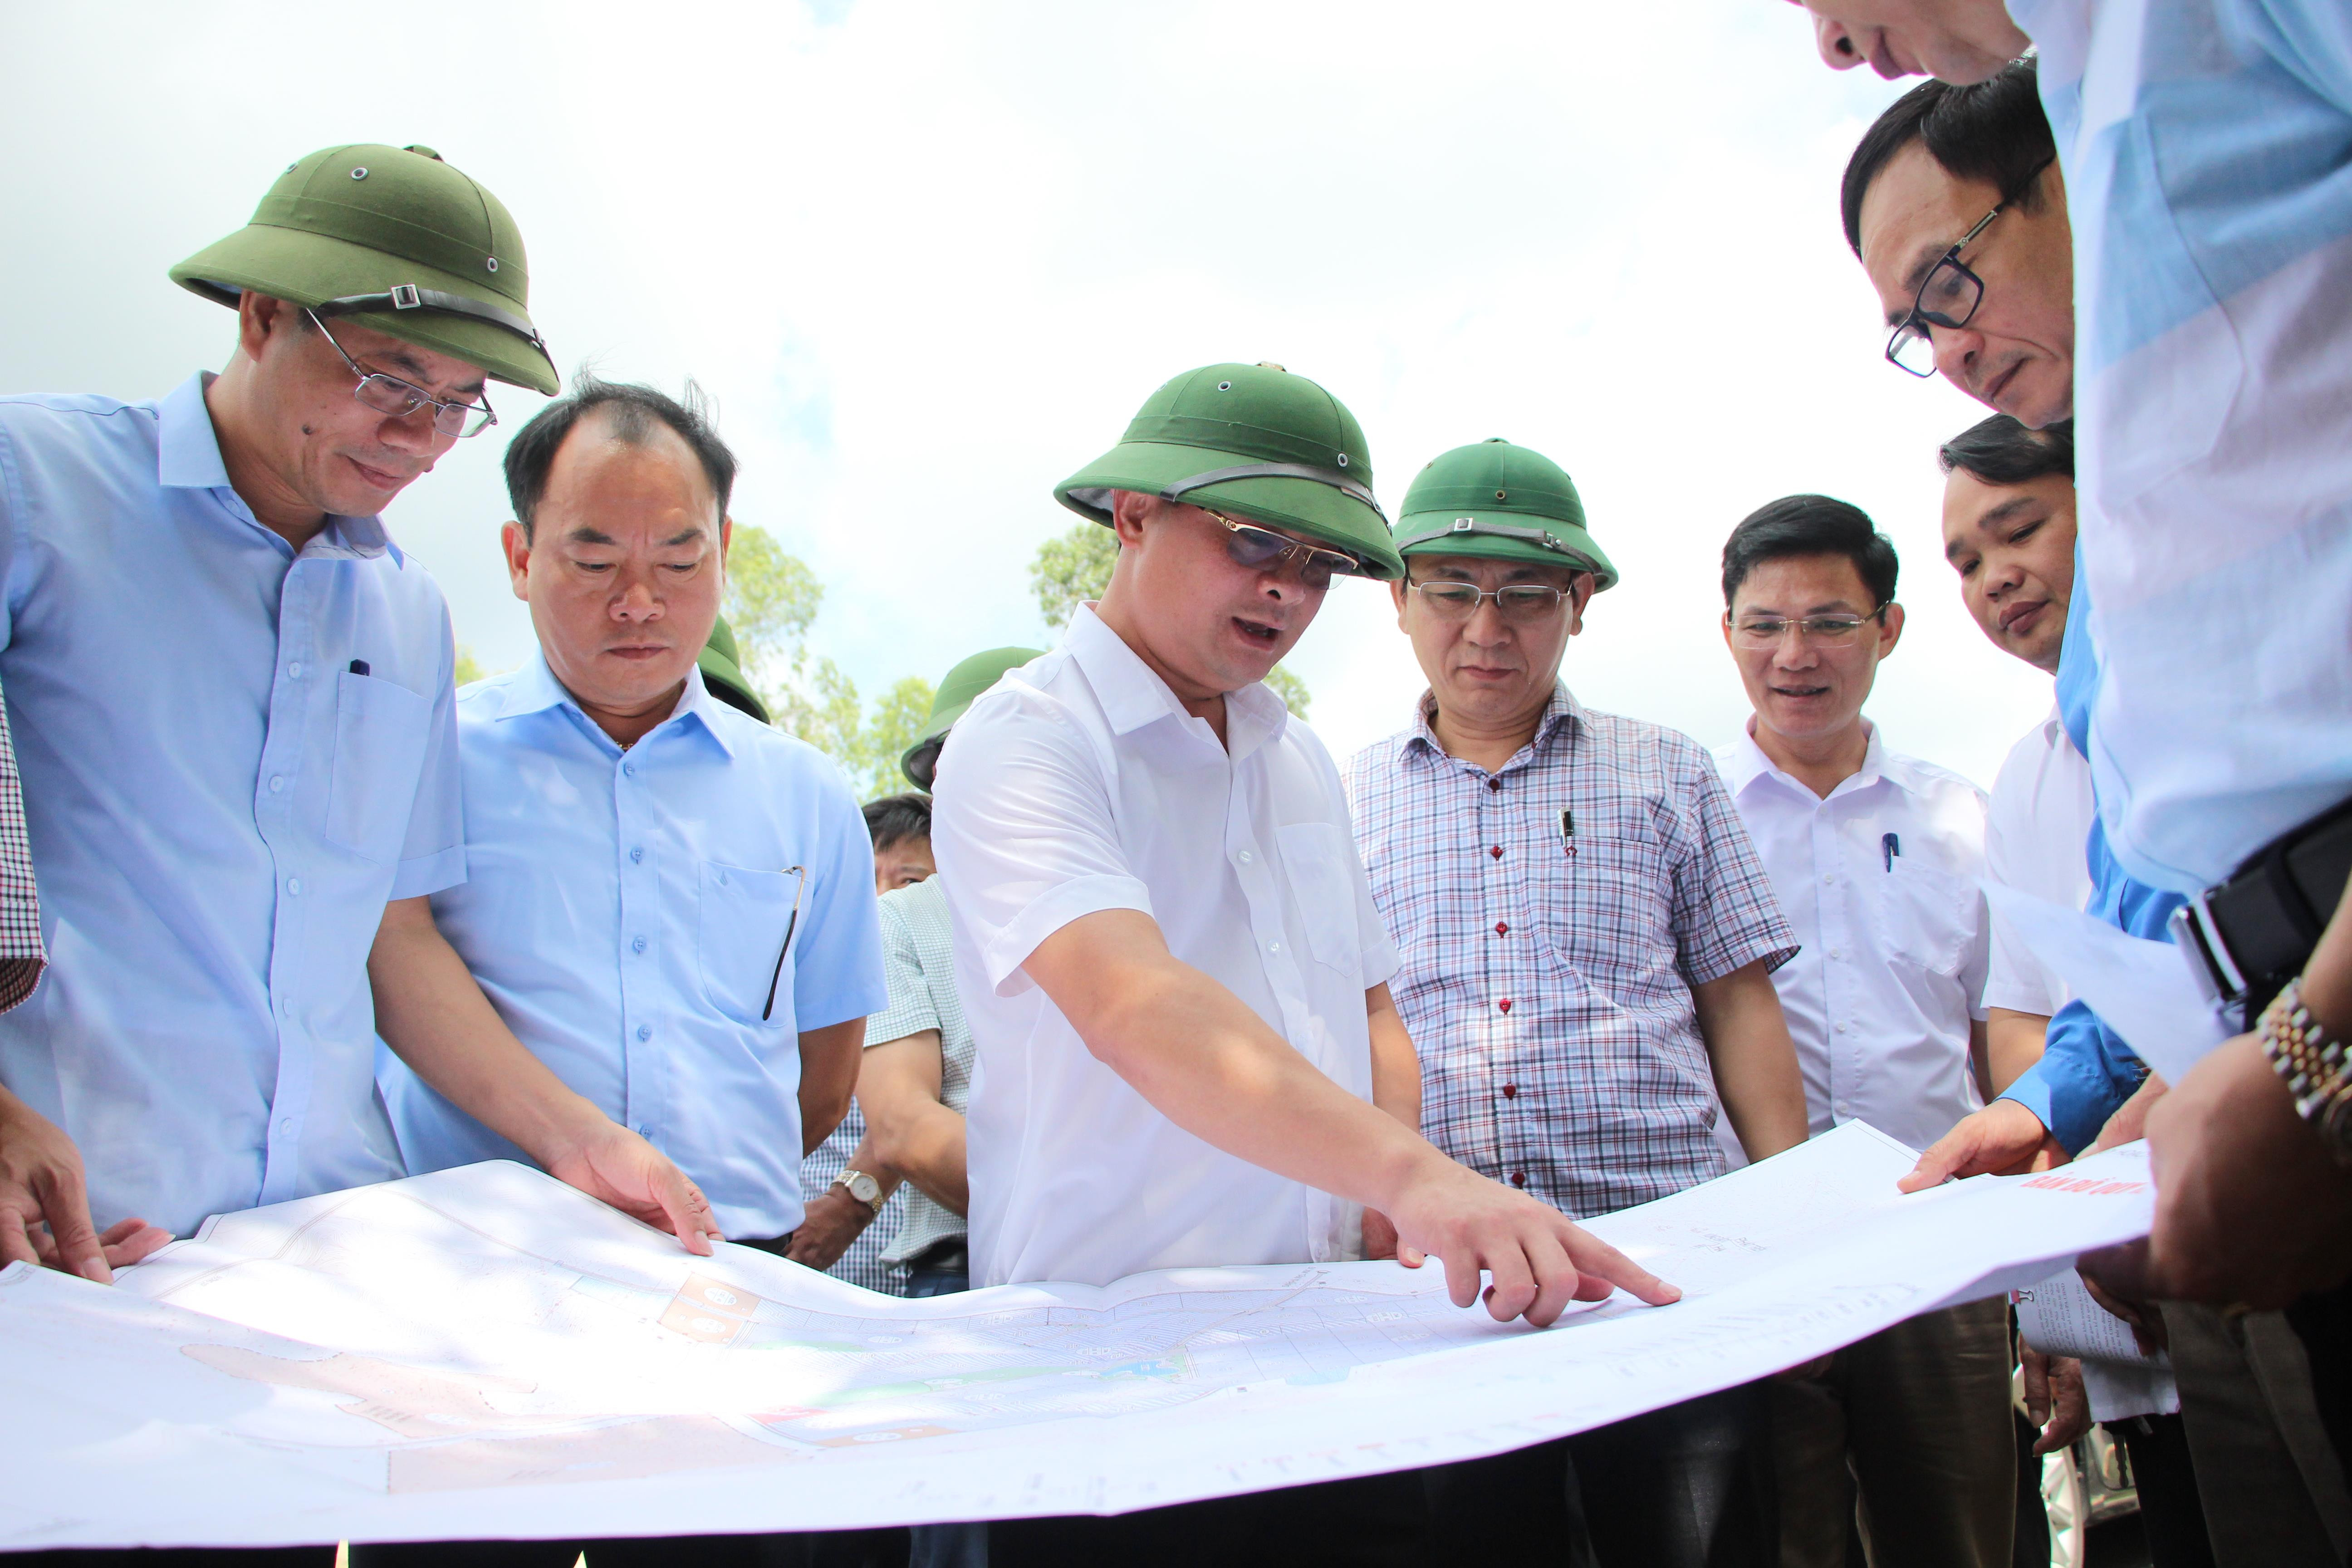 Cũng trong buổi sáng, đồng chí Thái Thanh Quý cùng đoàn công tác đã kiểm tra quy hoạch Khu Công nghiệp Hoàng Mai 2 tại xã Quỳnh Vinh.